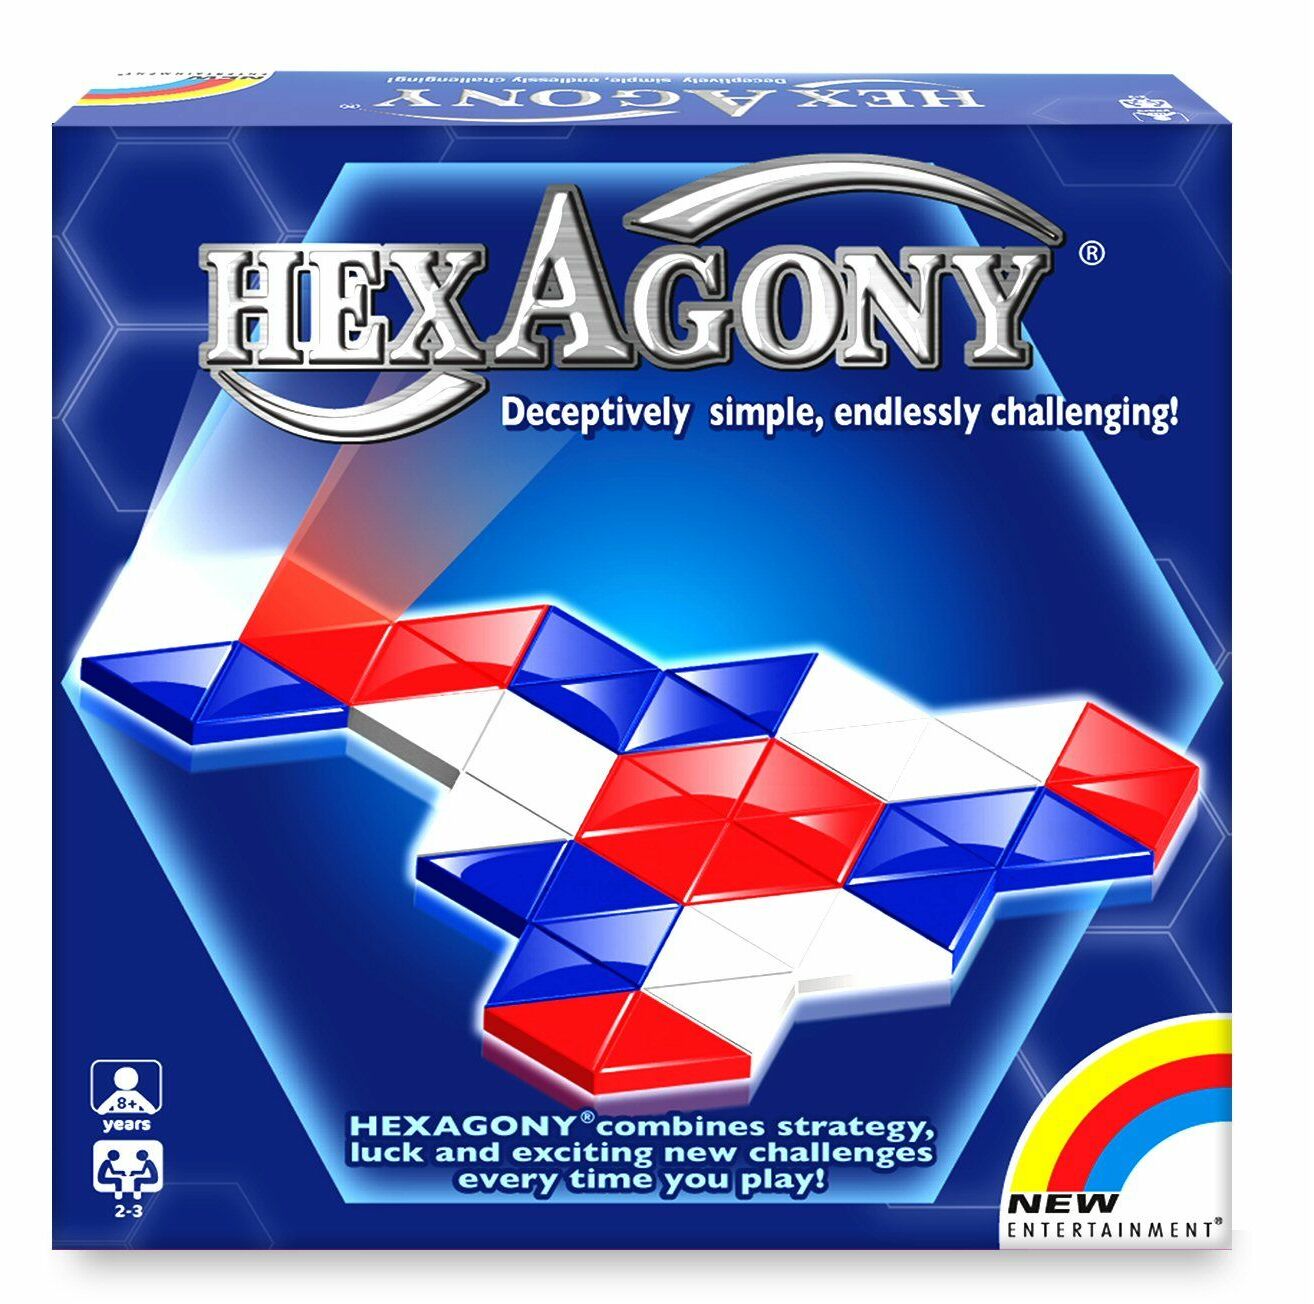 HexAgony (Bordspellen), New Entertainment